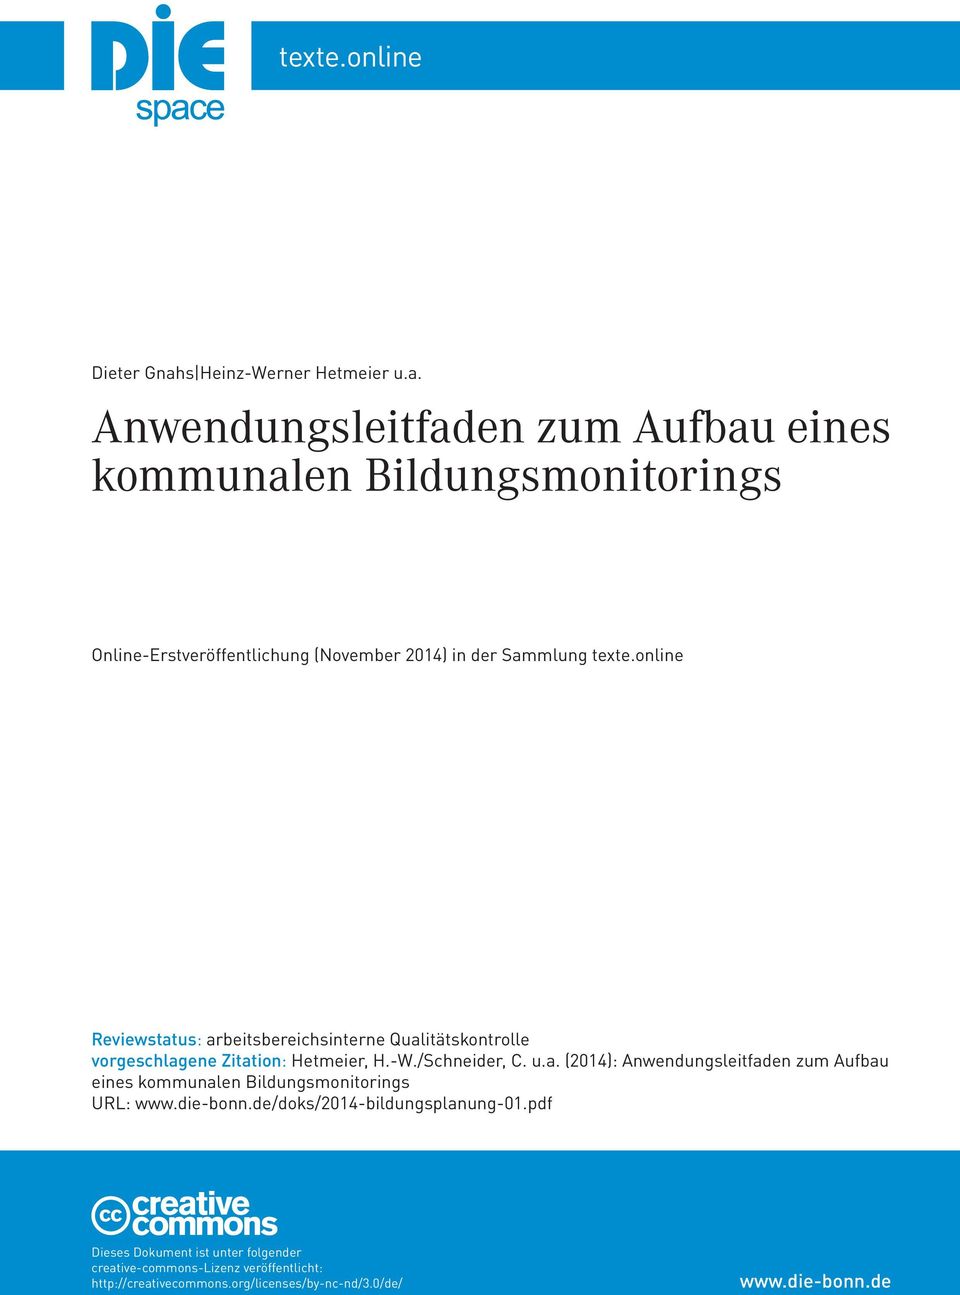 Anwendungsleitfaden zum Aufbau eines kommunalen Bildungsmonitorings Online-Erstveröffentlichung (November 2014) in der Sammlung texte.